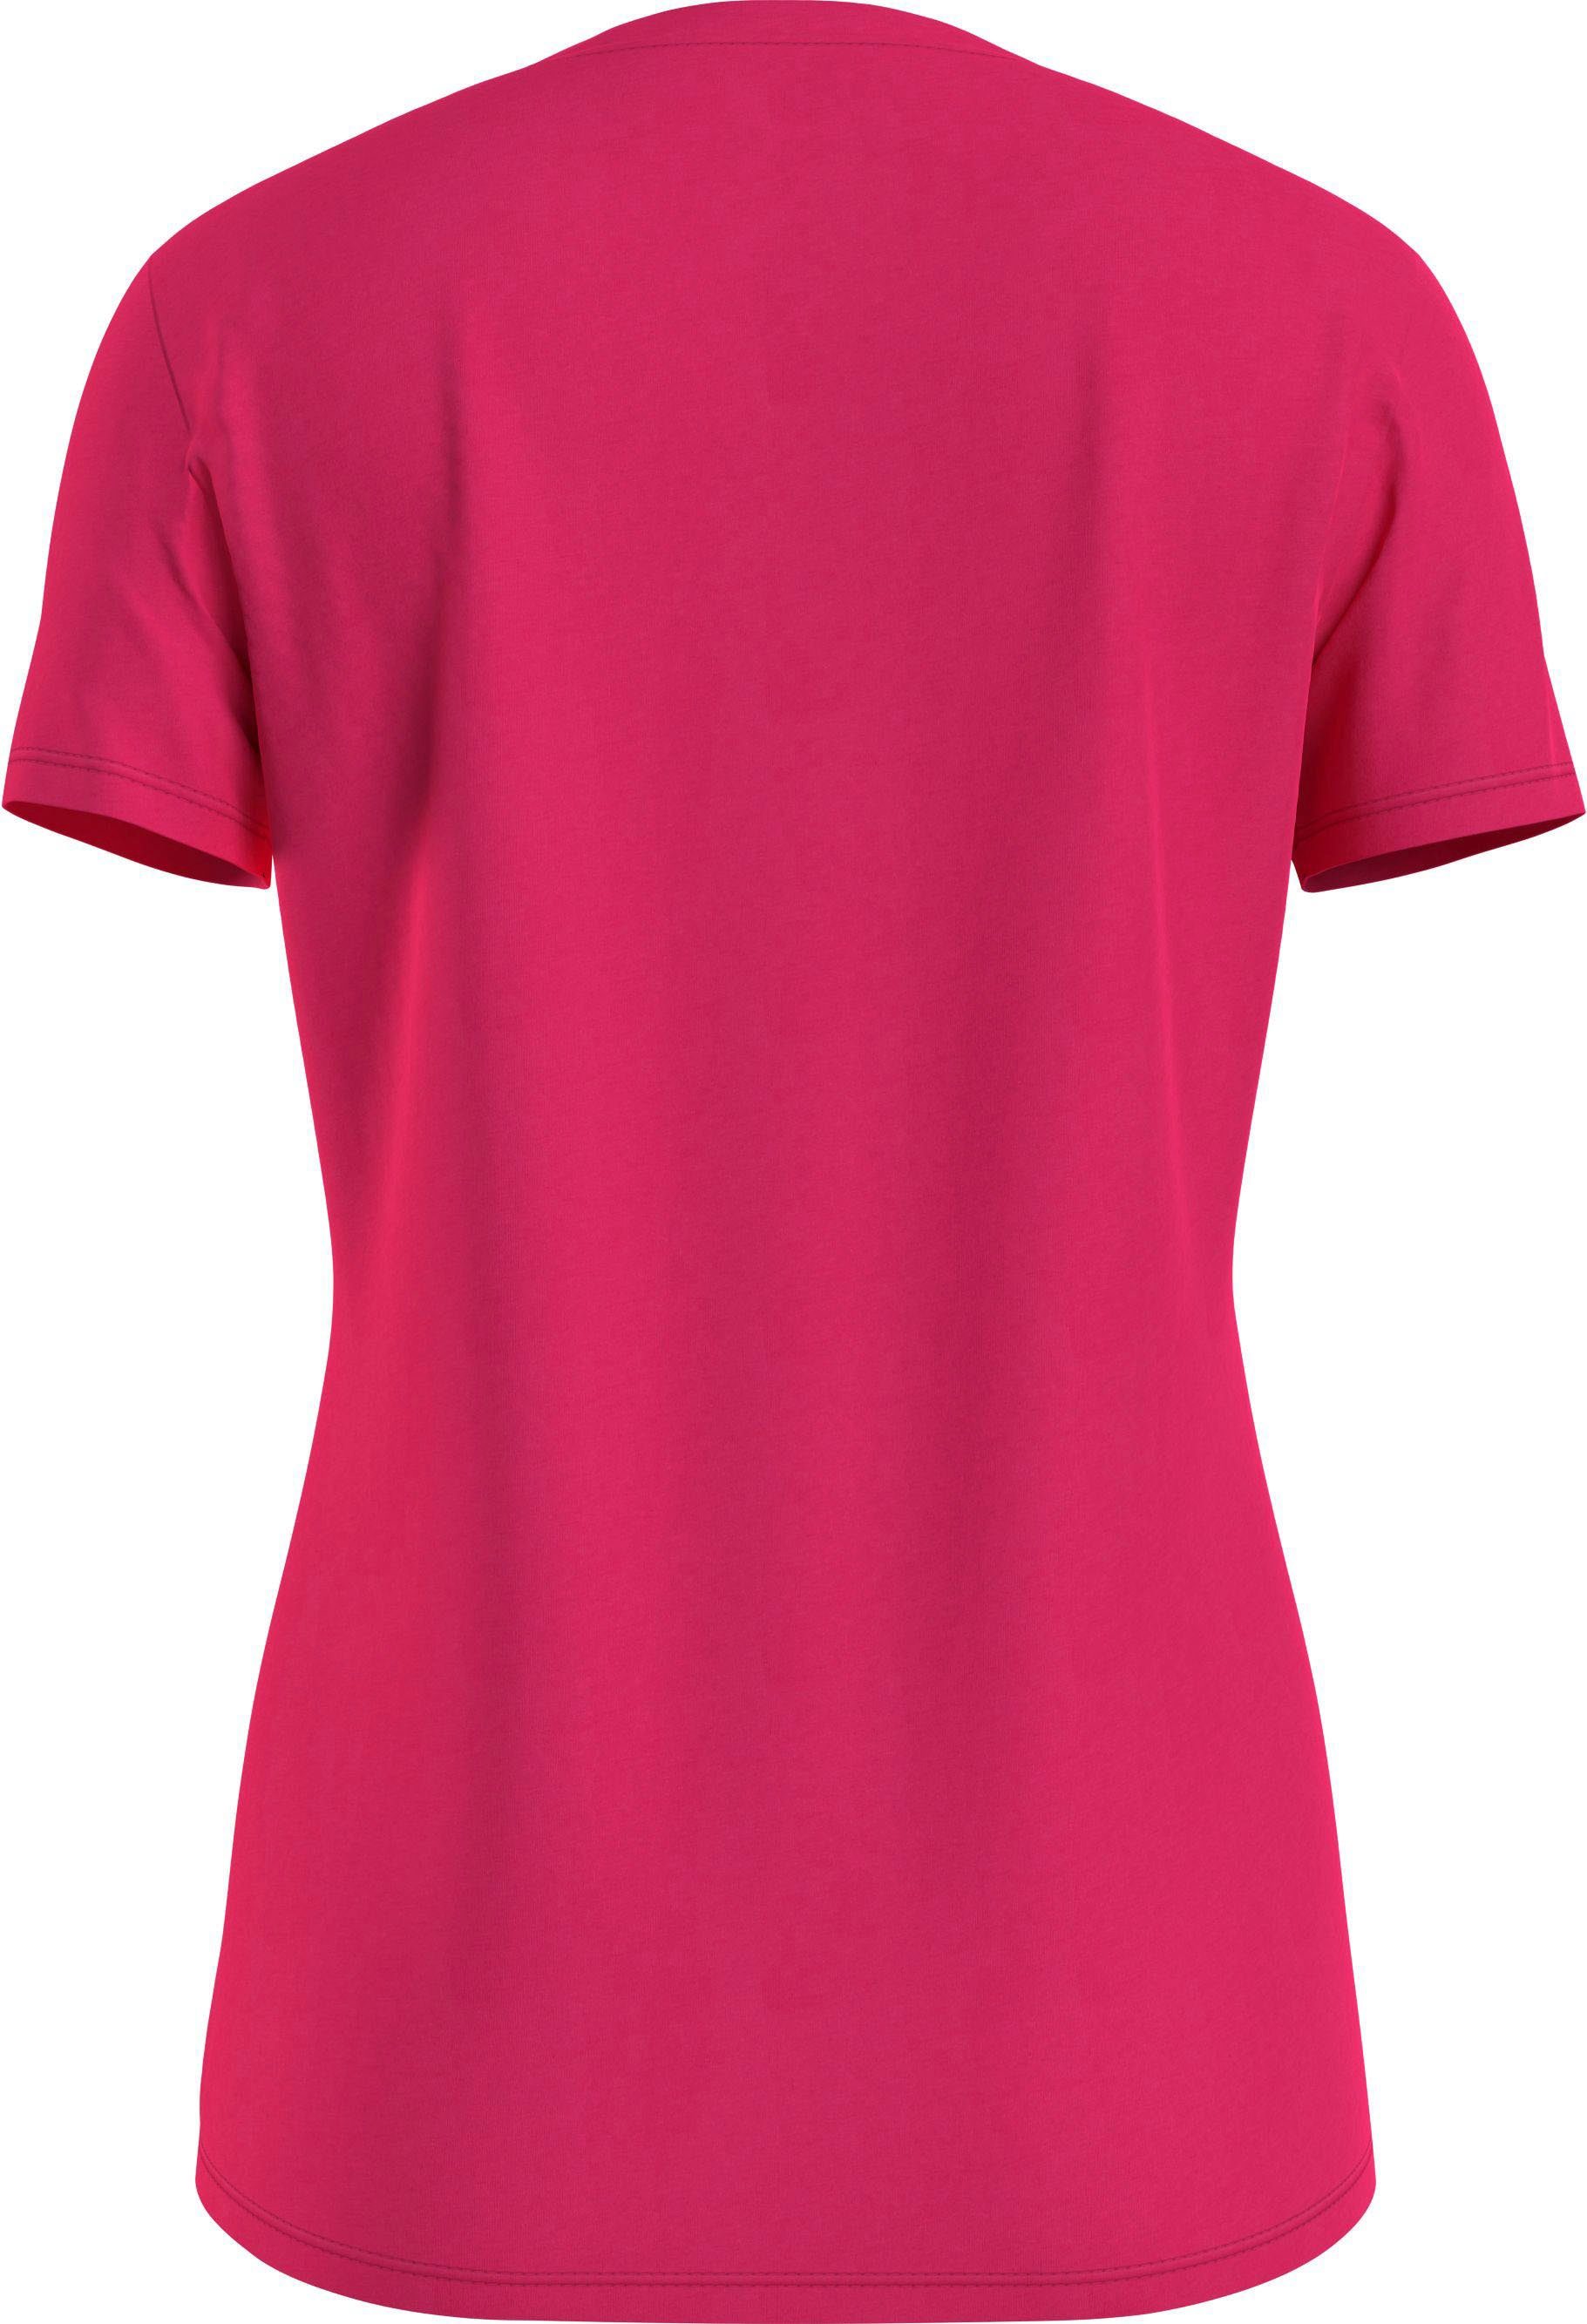 CREW T-Shirt Tommy mit Hilfiger Tommy Pink-Splendor NECK Hilfiger TEE NEW Markenlabel